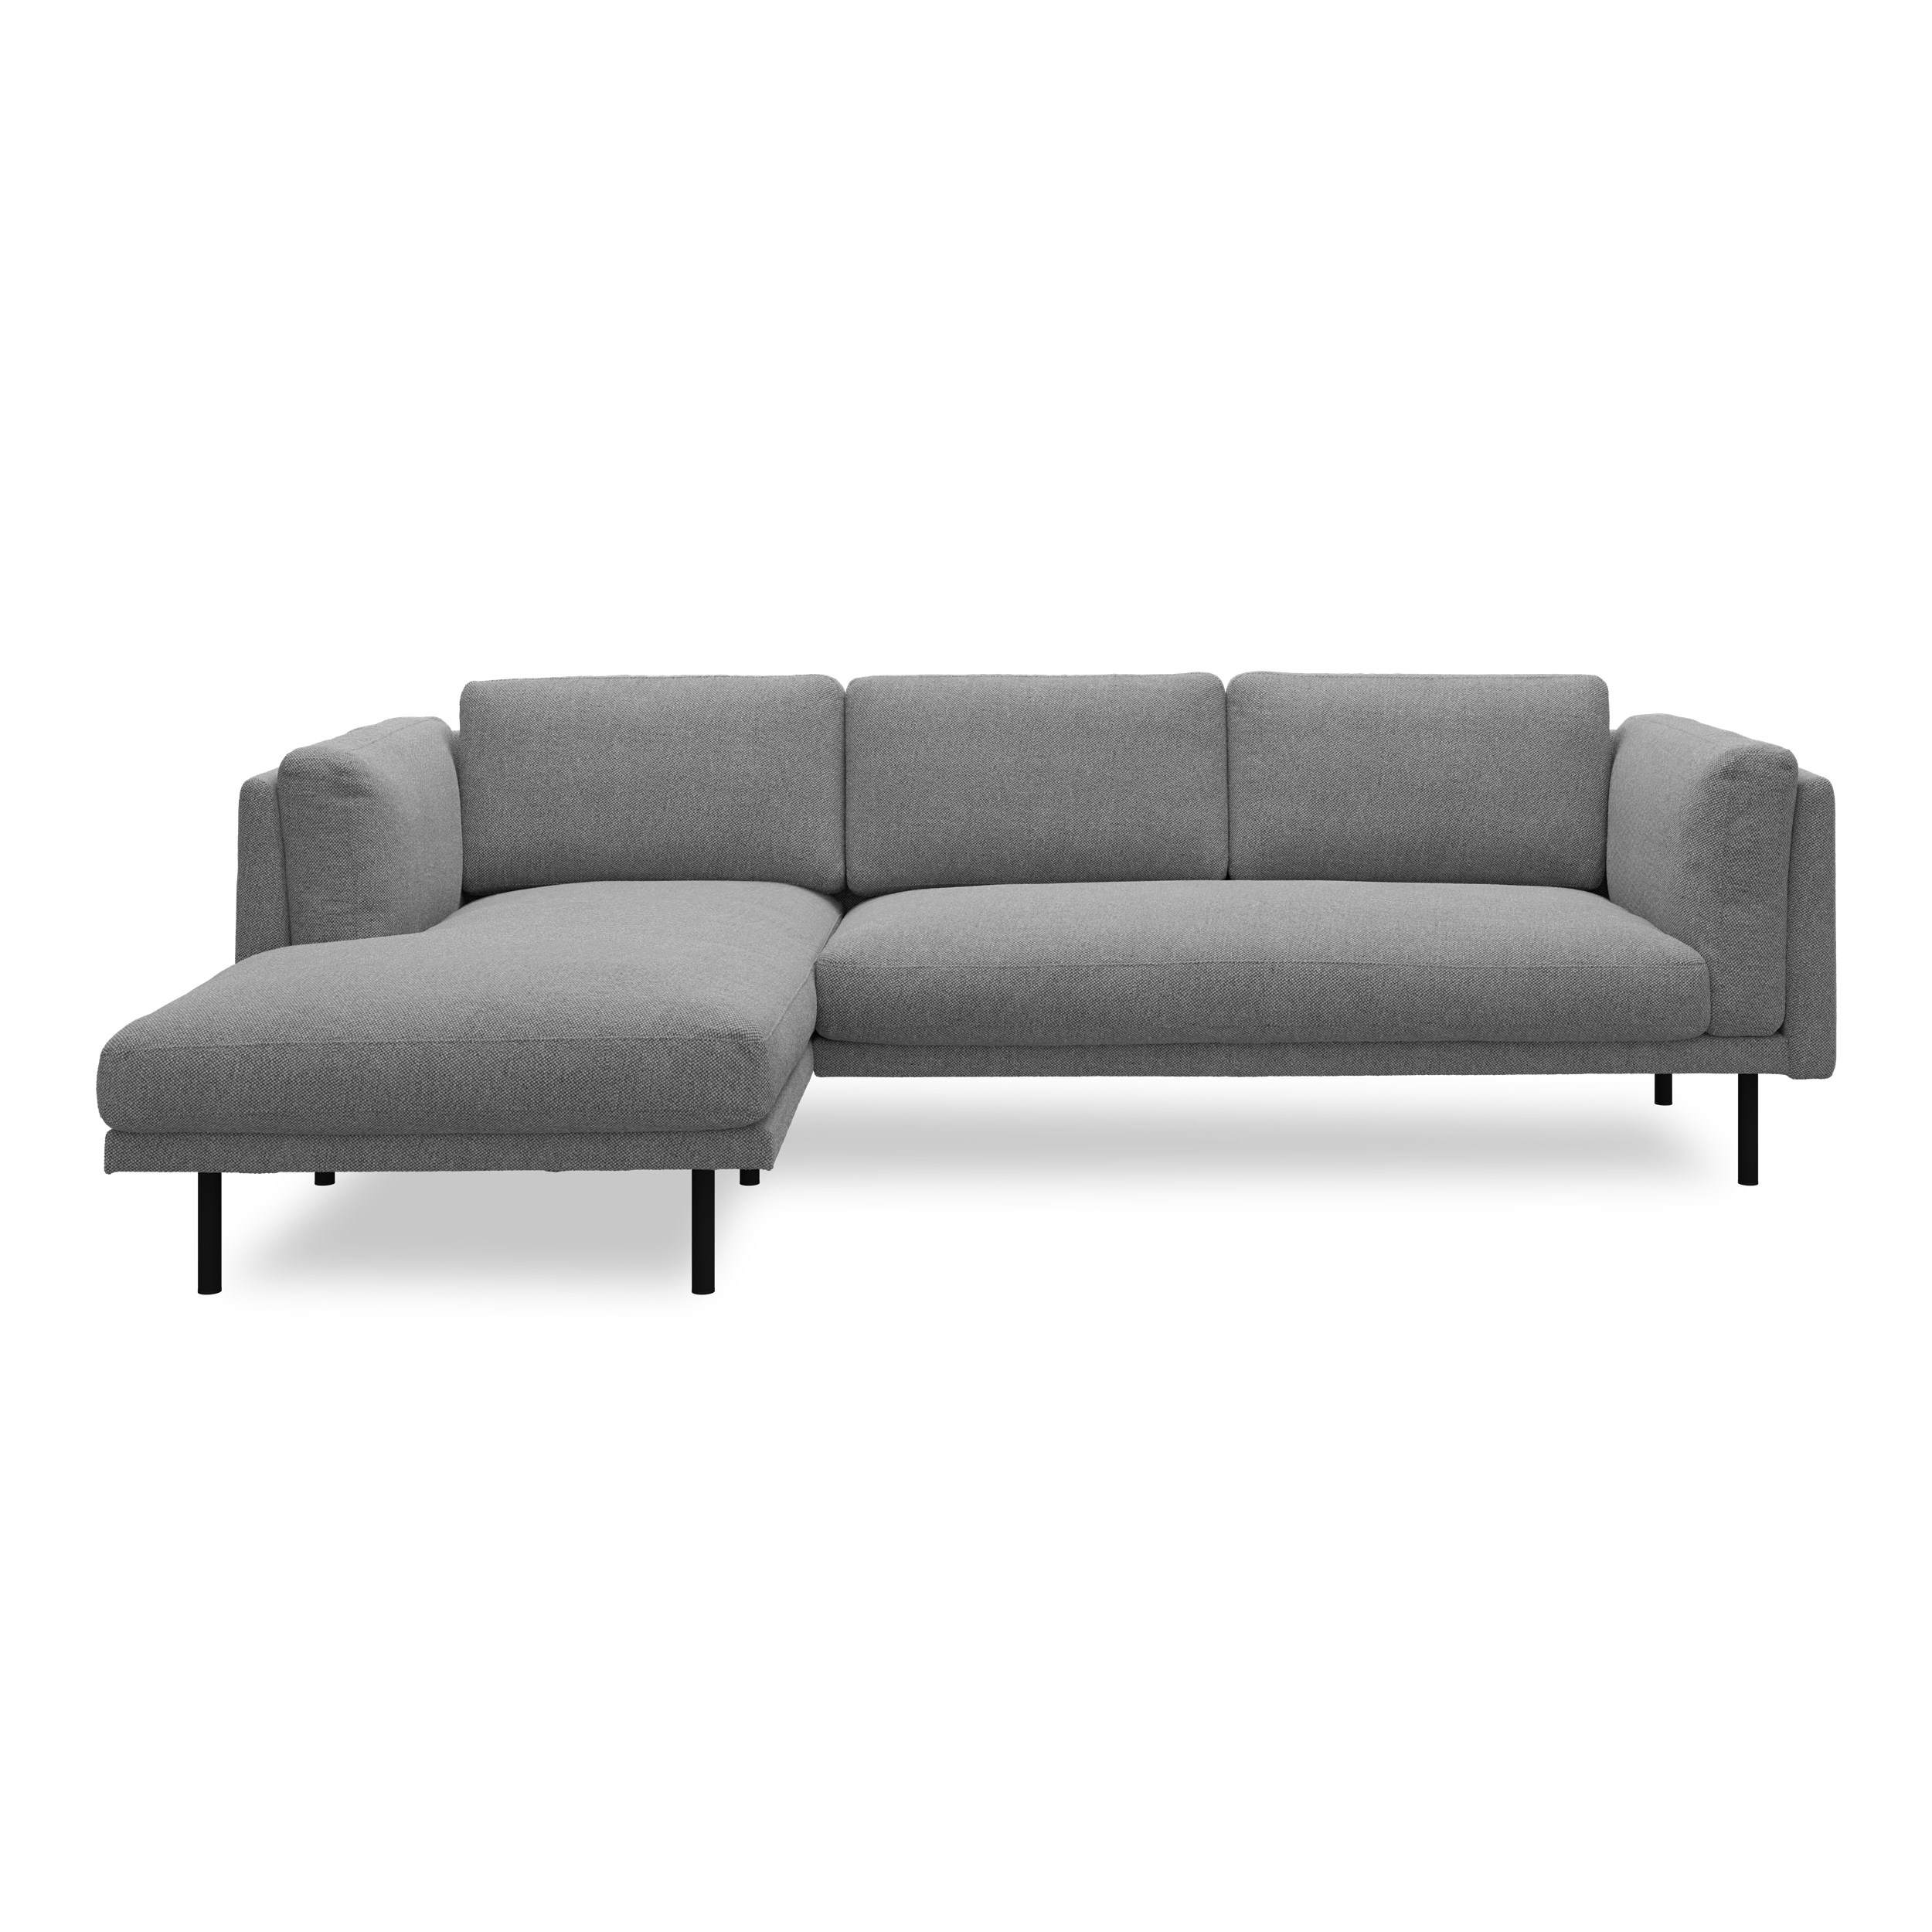 Nebel vänstervänd soffa med schäslong - Denno 87 Slate grey klädsel och svart pulverlackerad metall